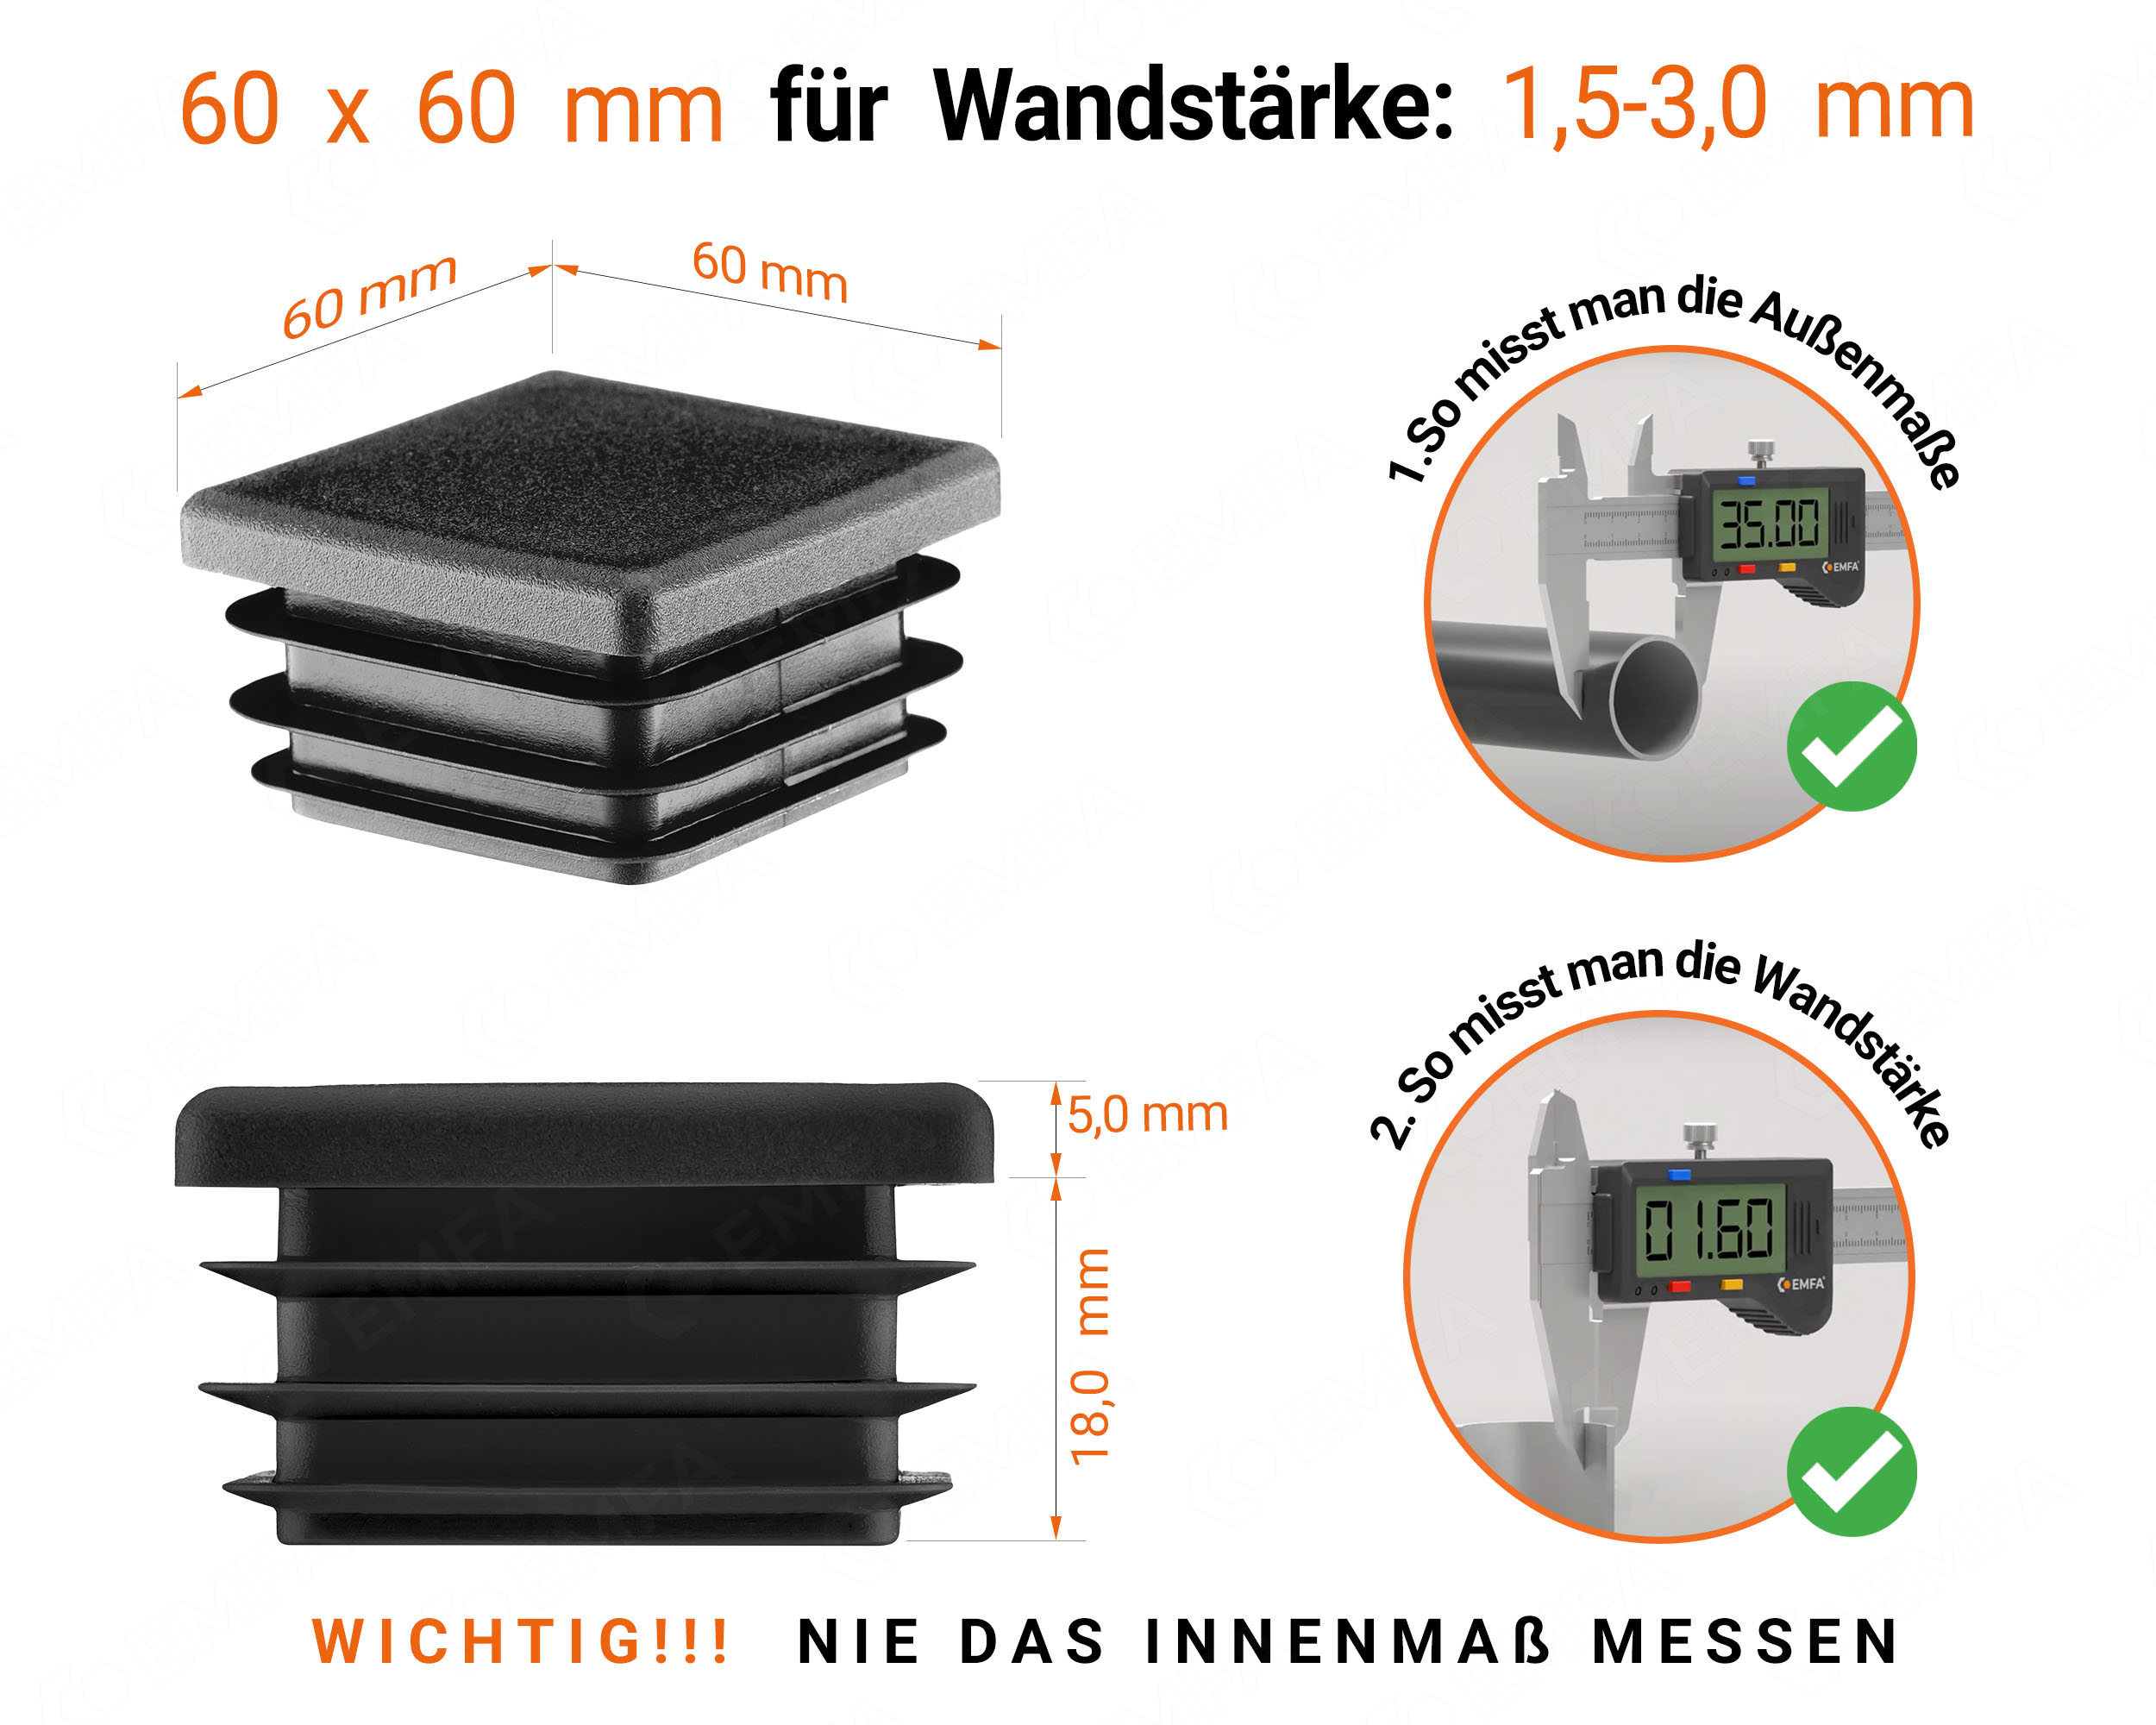 Schwarze Endkappe für Vierkantrohre in der Größe 60x60 mm mit technischen Abmessungen und Anleitung für korrekte Messung